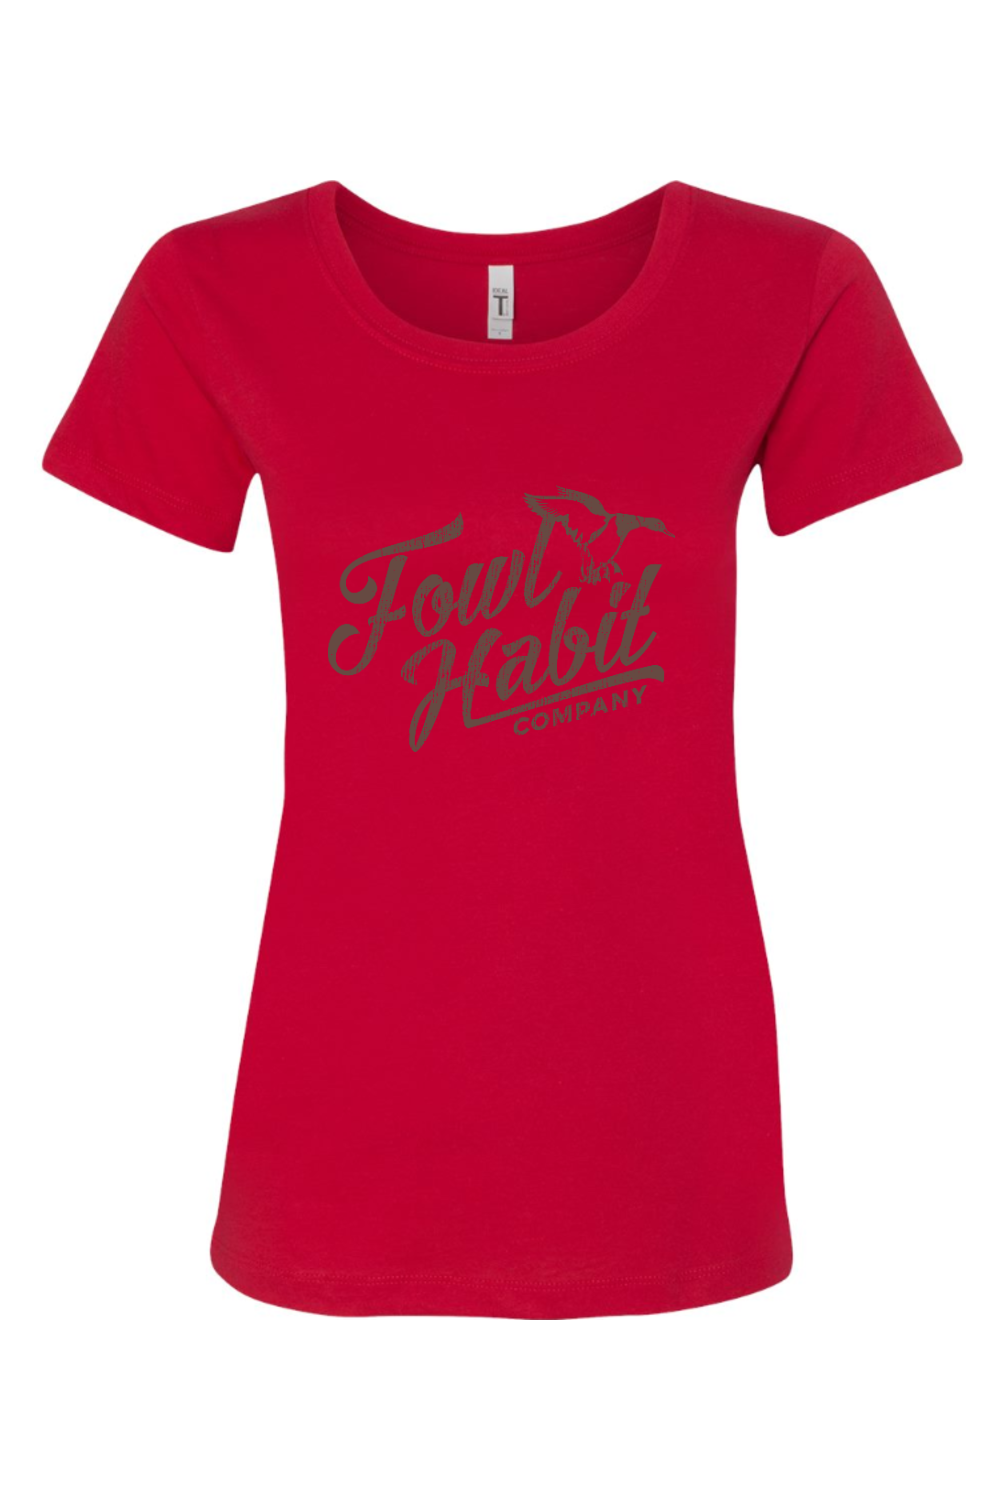 Womens "The Logo" T-Shirt - Fowl Habit Co.